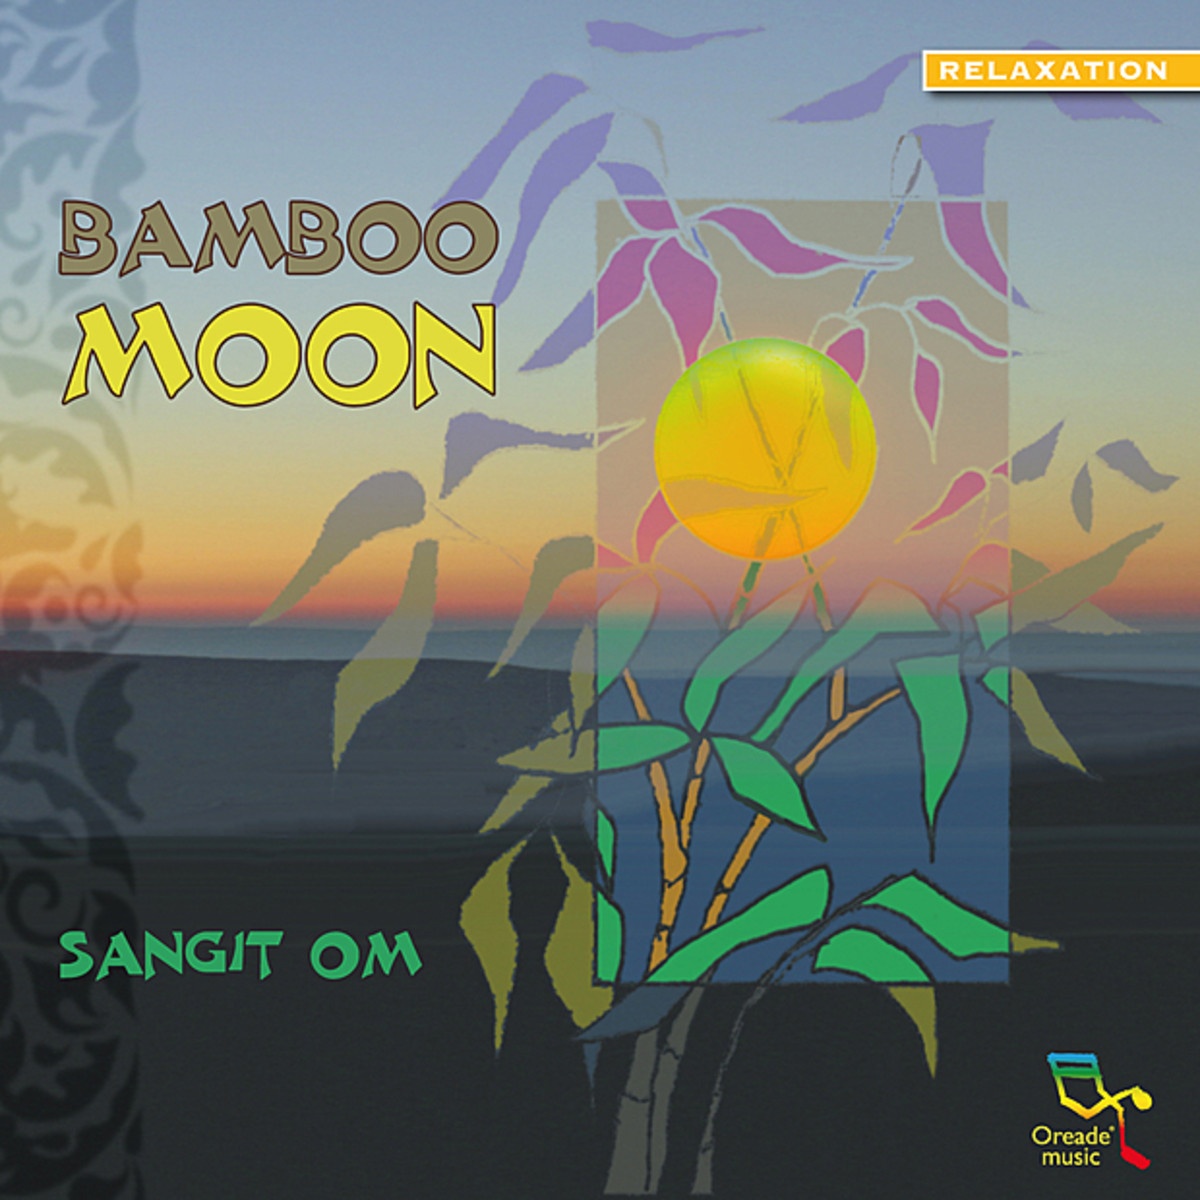 Bamboo Moon